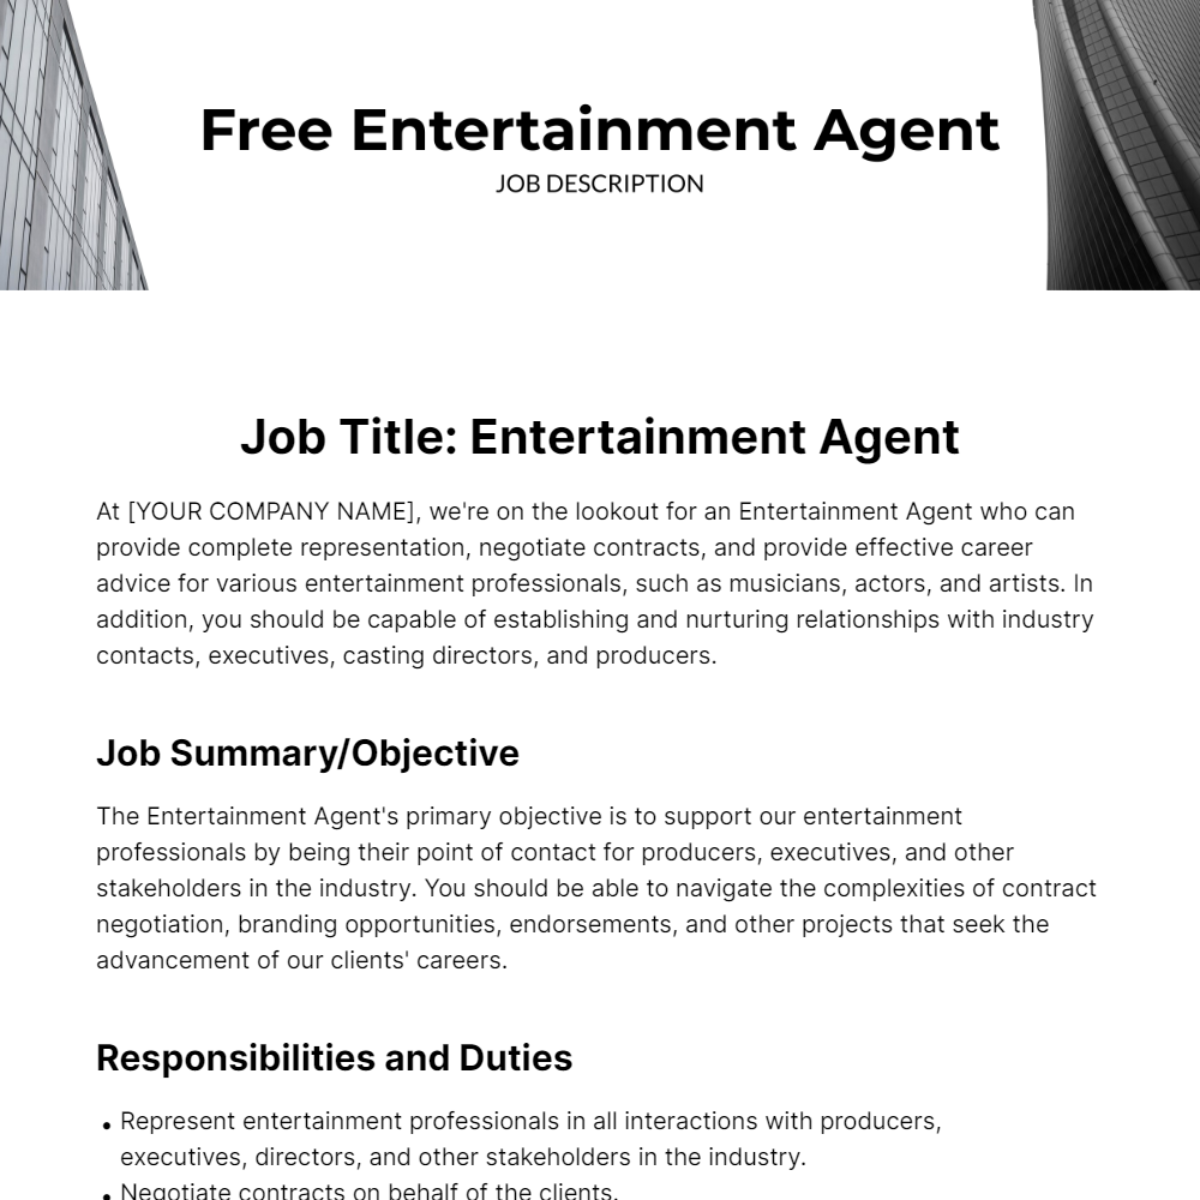 Free Entertainment Agent Job Description Template